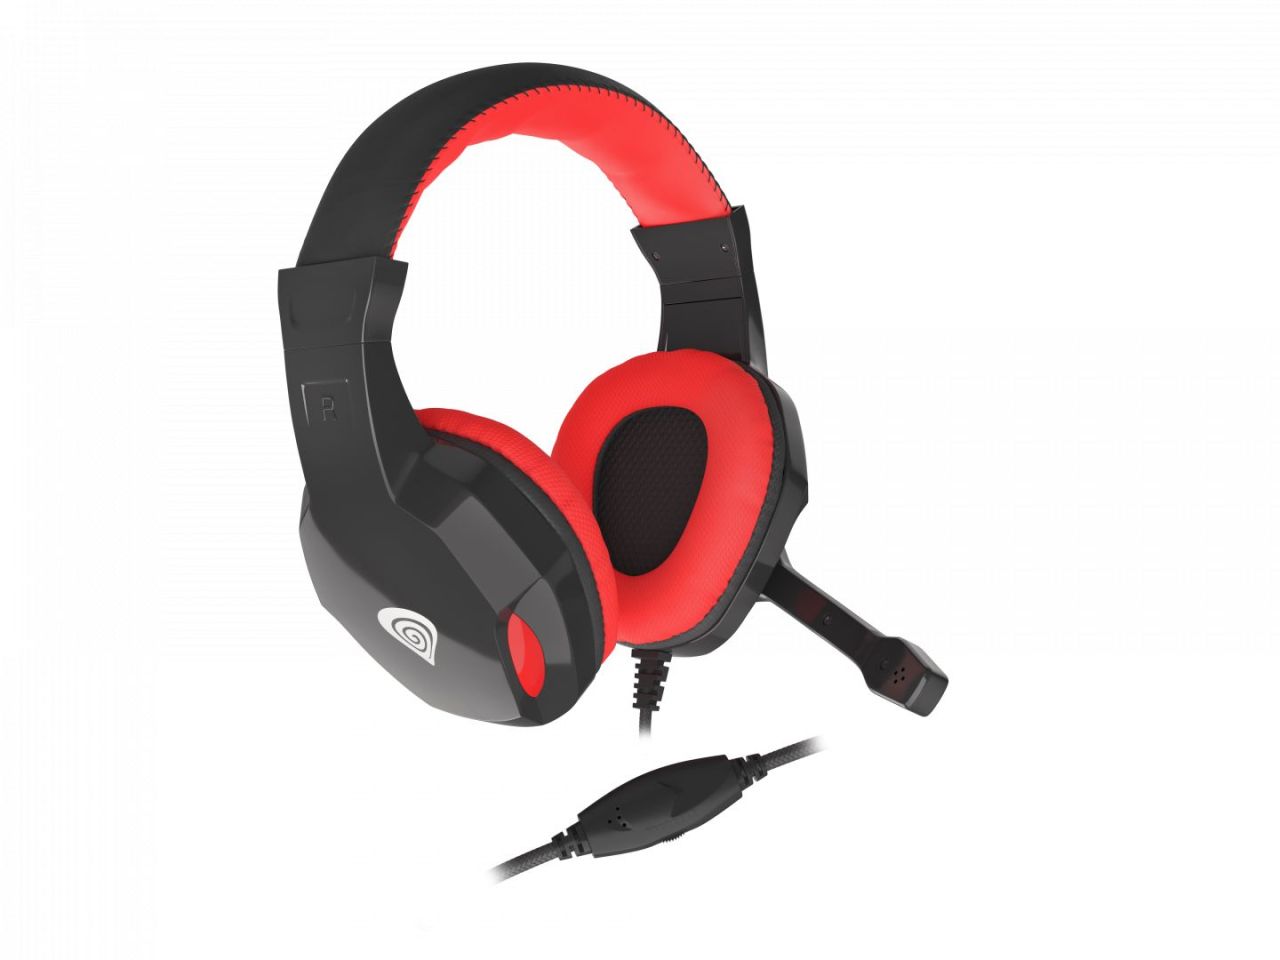 Natec Genesis Argon 100 Gamer Headset Black/Red